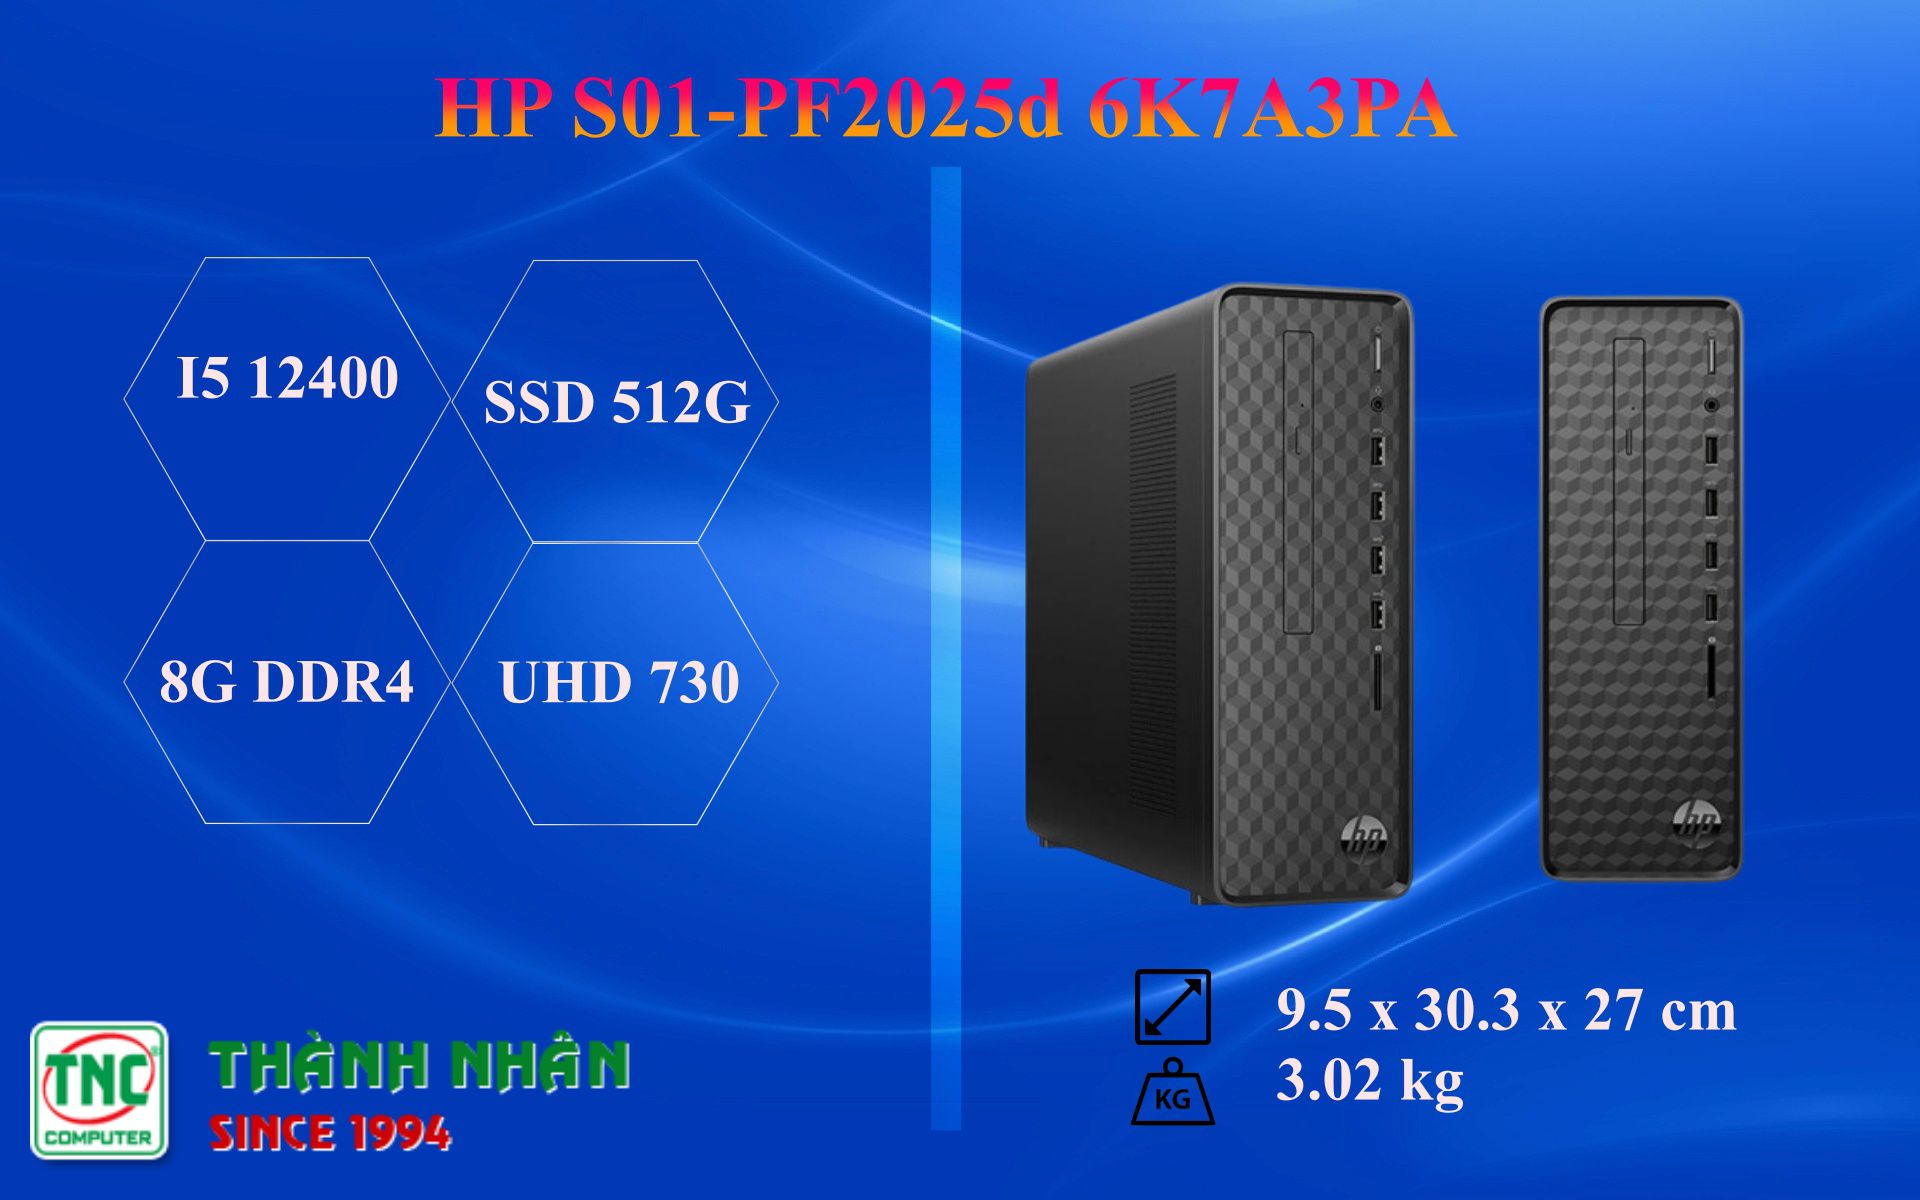 Máy bộ HP S01-pF2025d 6K7A3PA